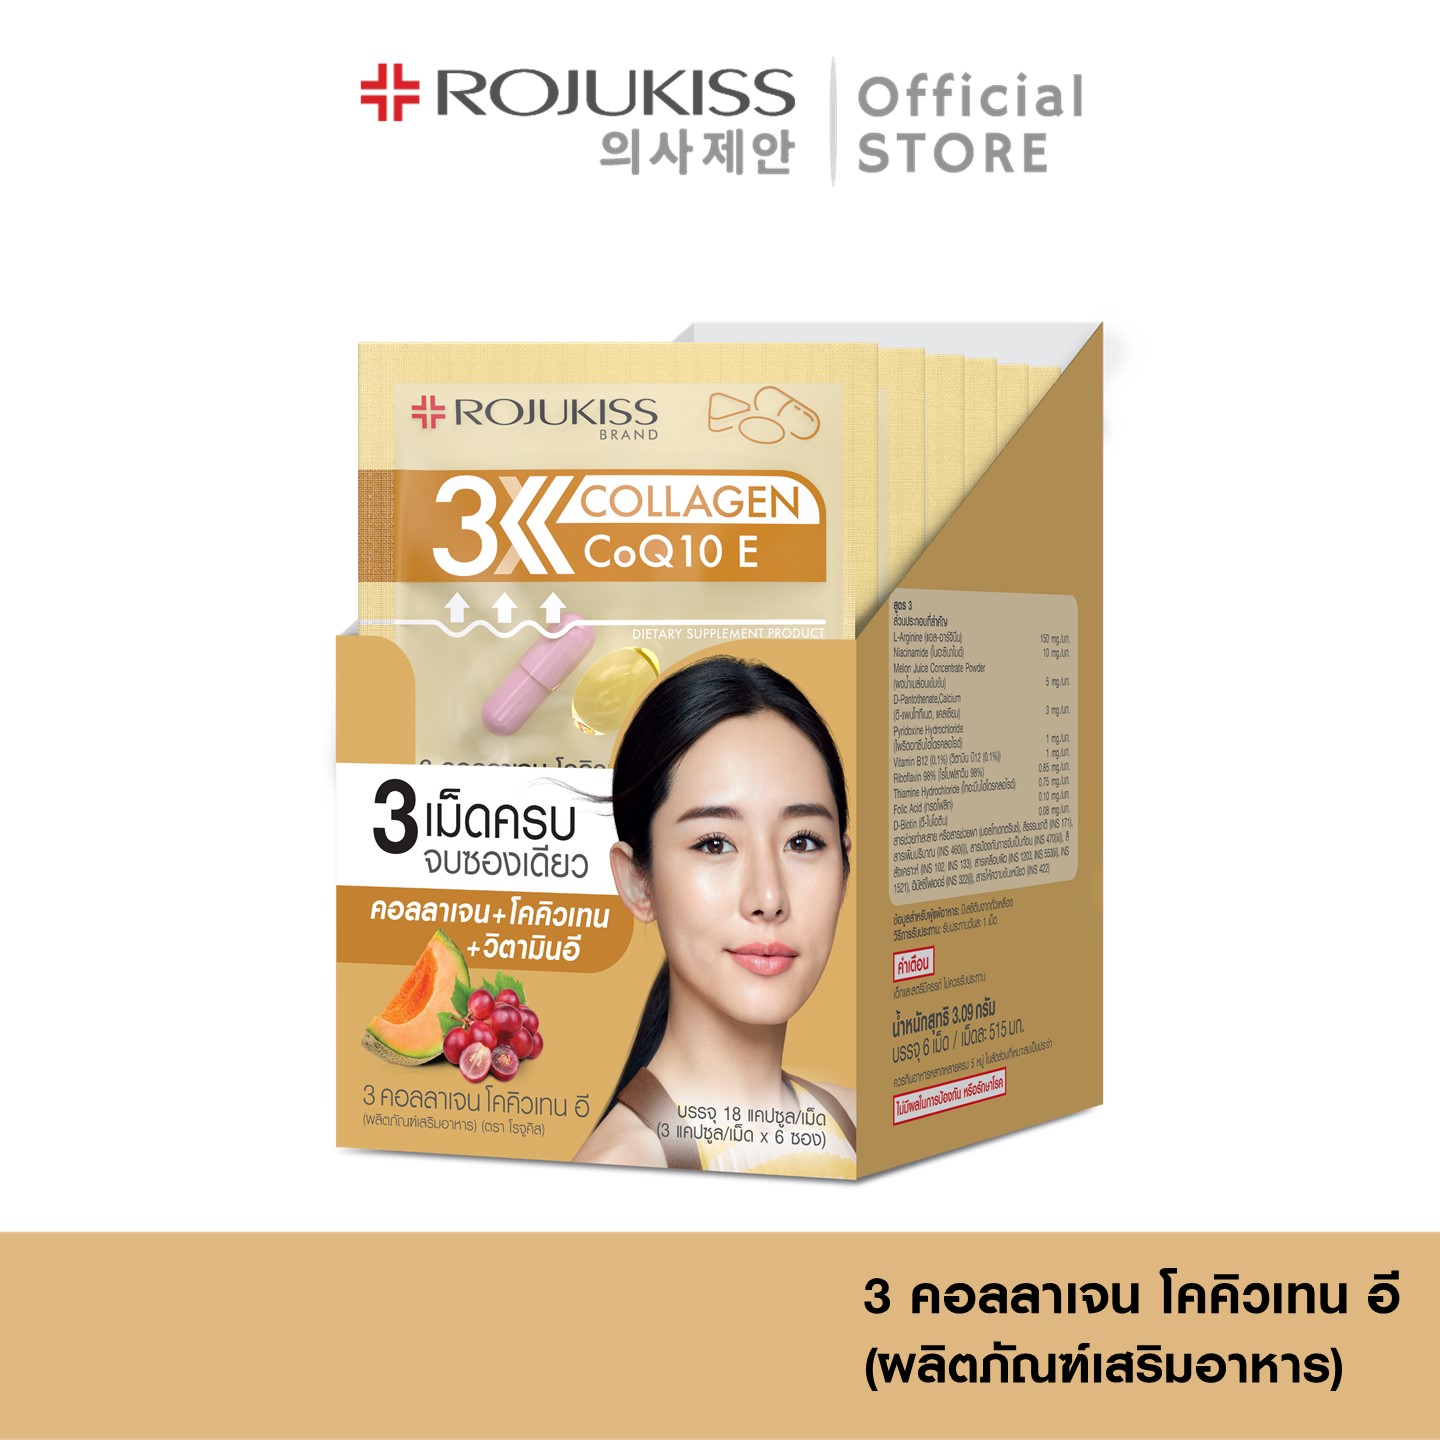 โรจูคิส 3 คอลลาเจน โคคิวเทน อี (ผลิตภัณฑ์เสริมอาหาร) Rojukiss 3 Collagen CoQ10 E ( อาหารเสริม คอลลาเจน โคคิวเท็น ผิวเด้ง )